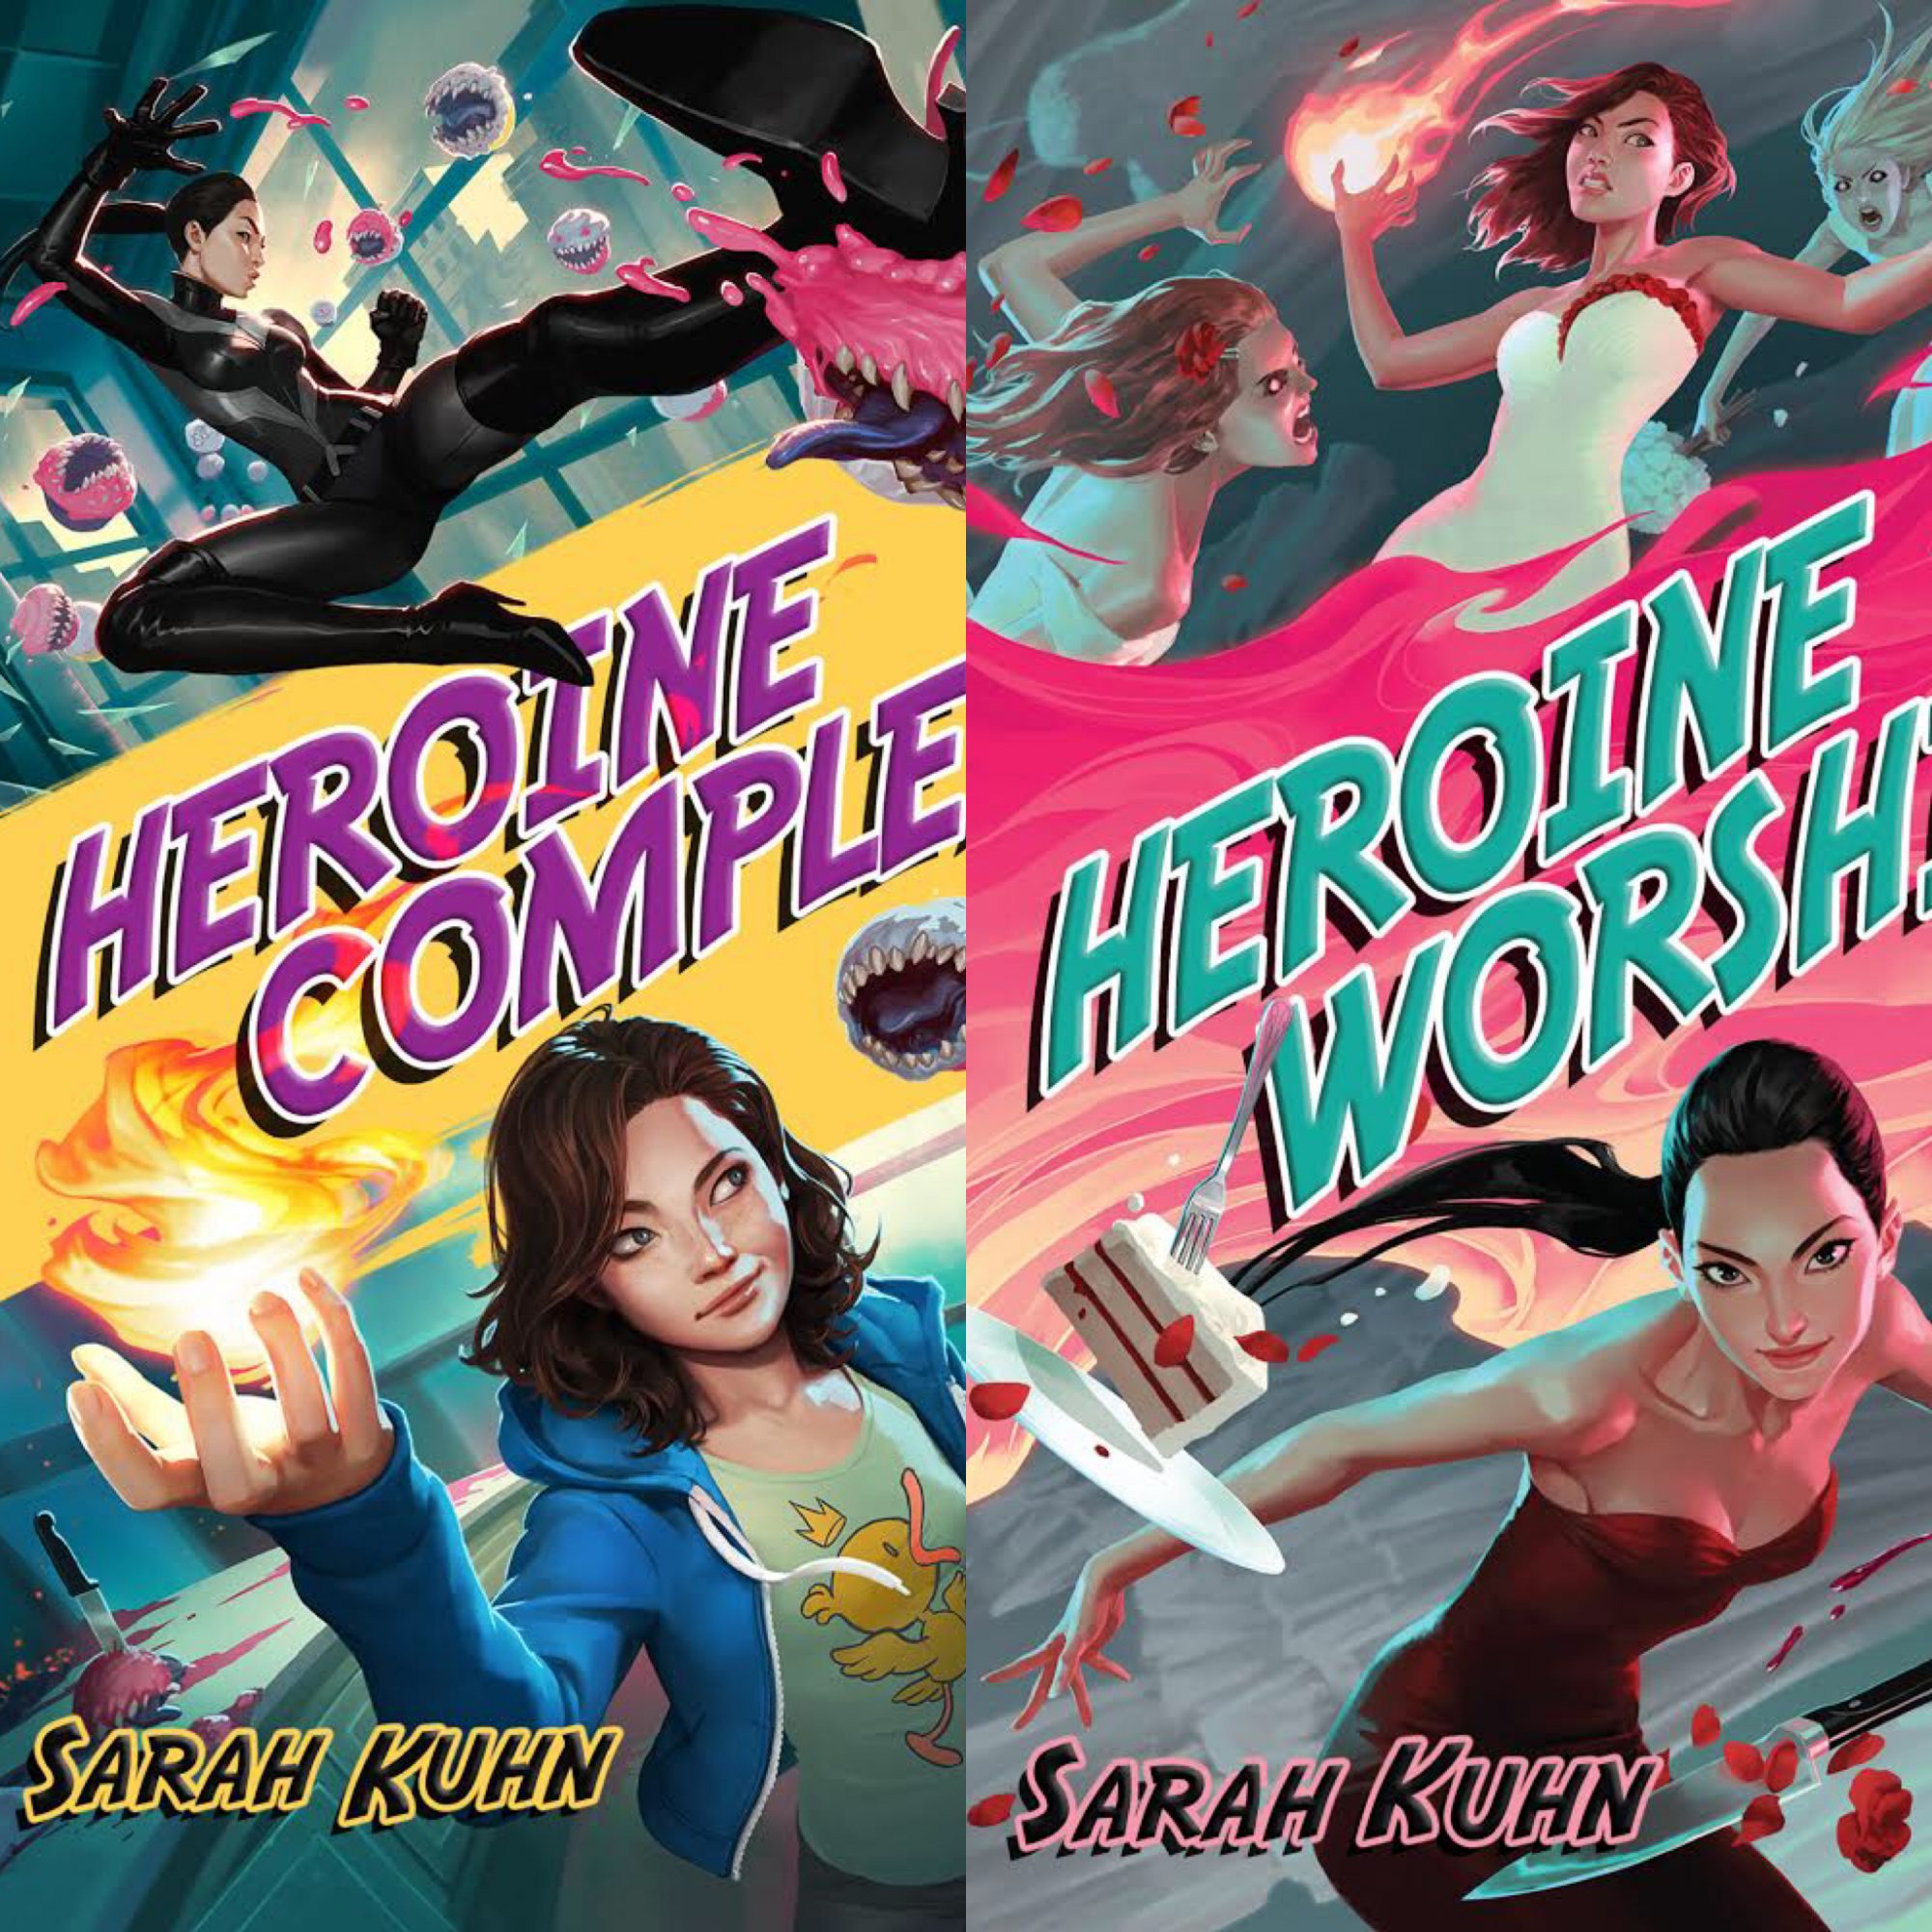 sarah-kuhn-heroine-covers.jpg